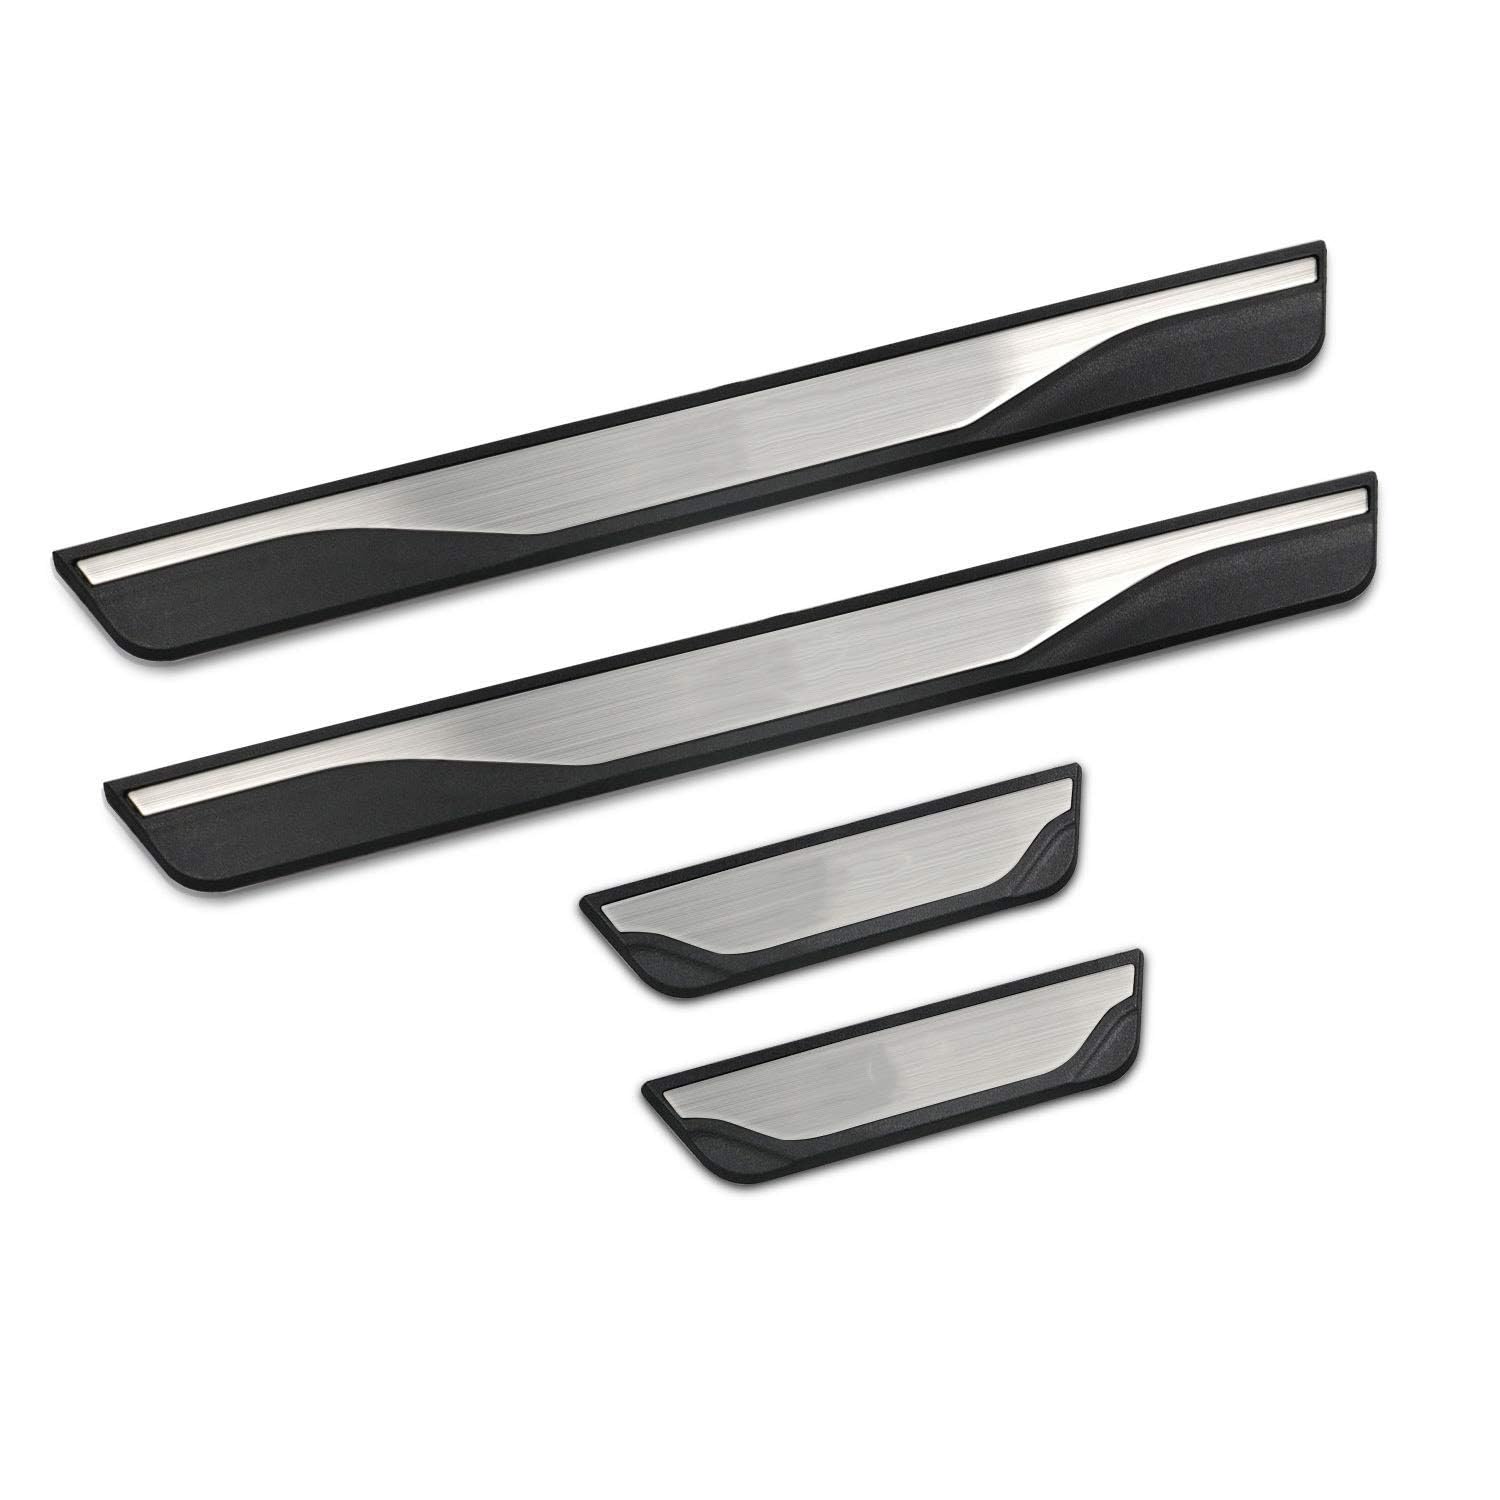 4 Stücke Auto Styling Edelstahl Einstiegsleisten Kick Plates für Suzuki Livio 2015-2018, Türschwelle Scuff Pedal Anti Scratch Schwellenabdeckung Zubehör von HALOUJQK